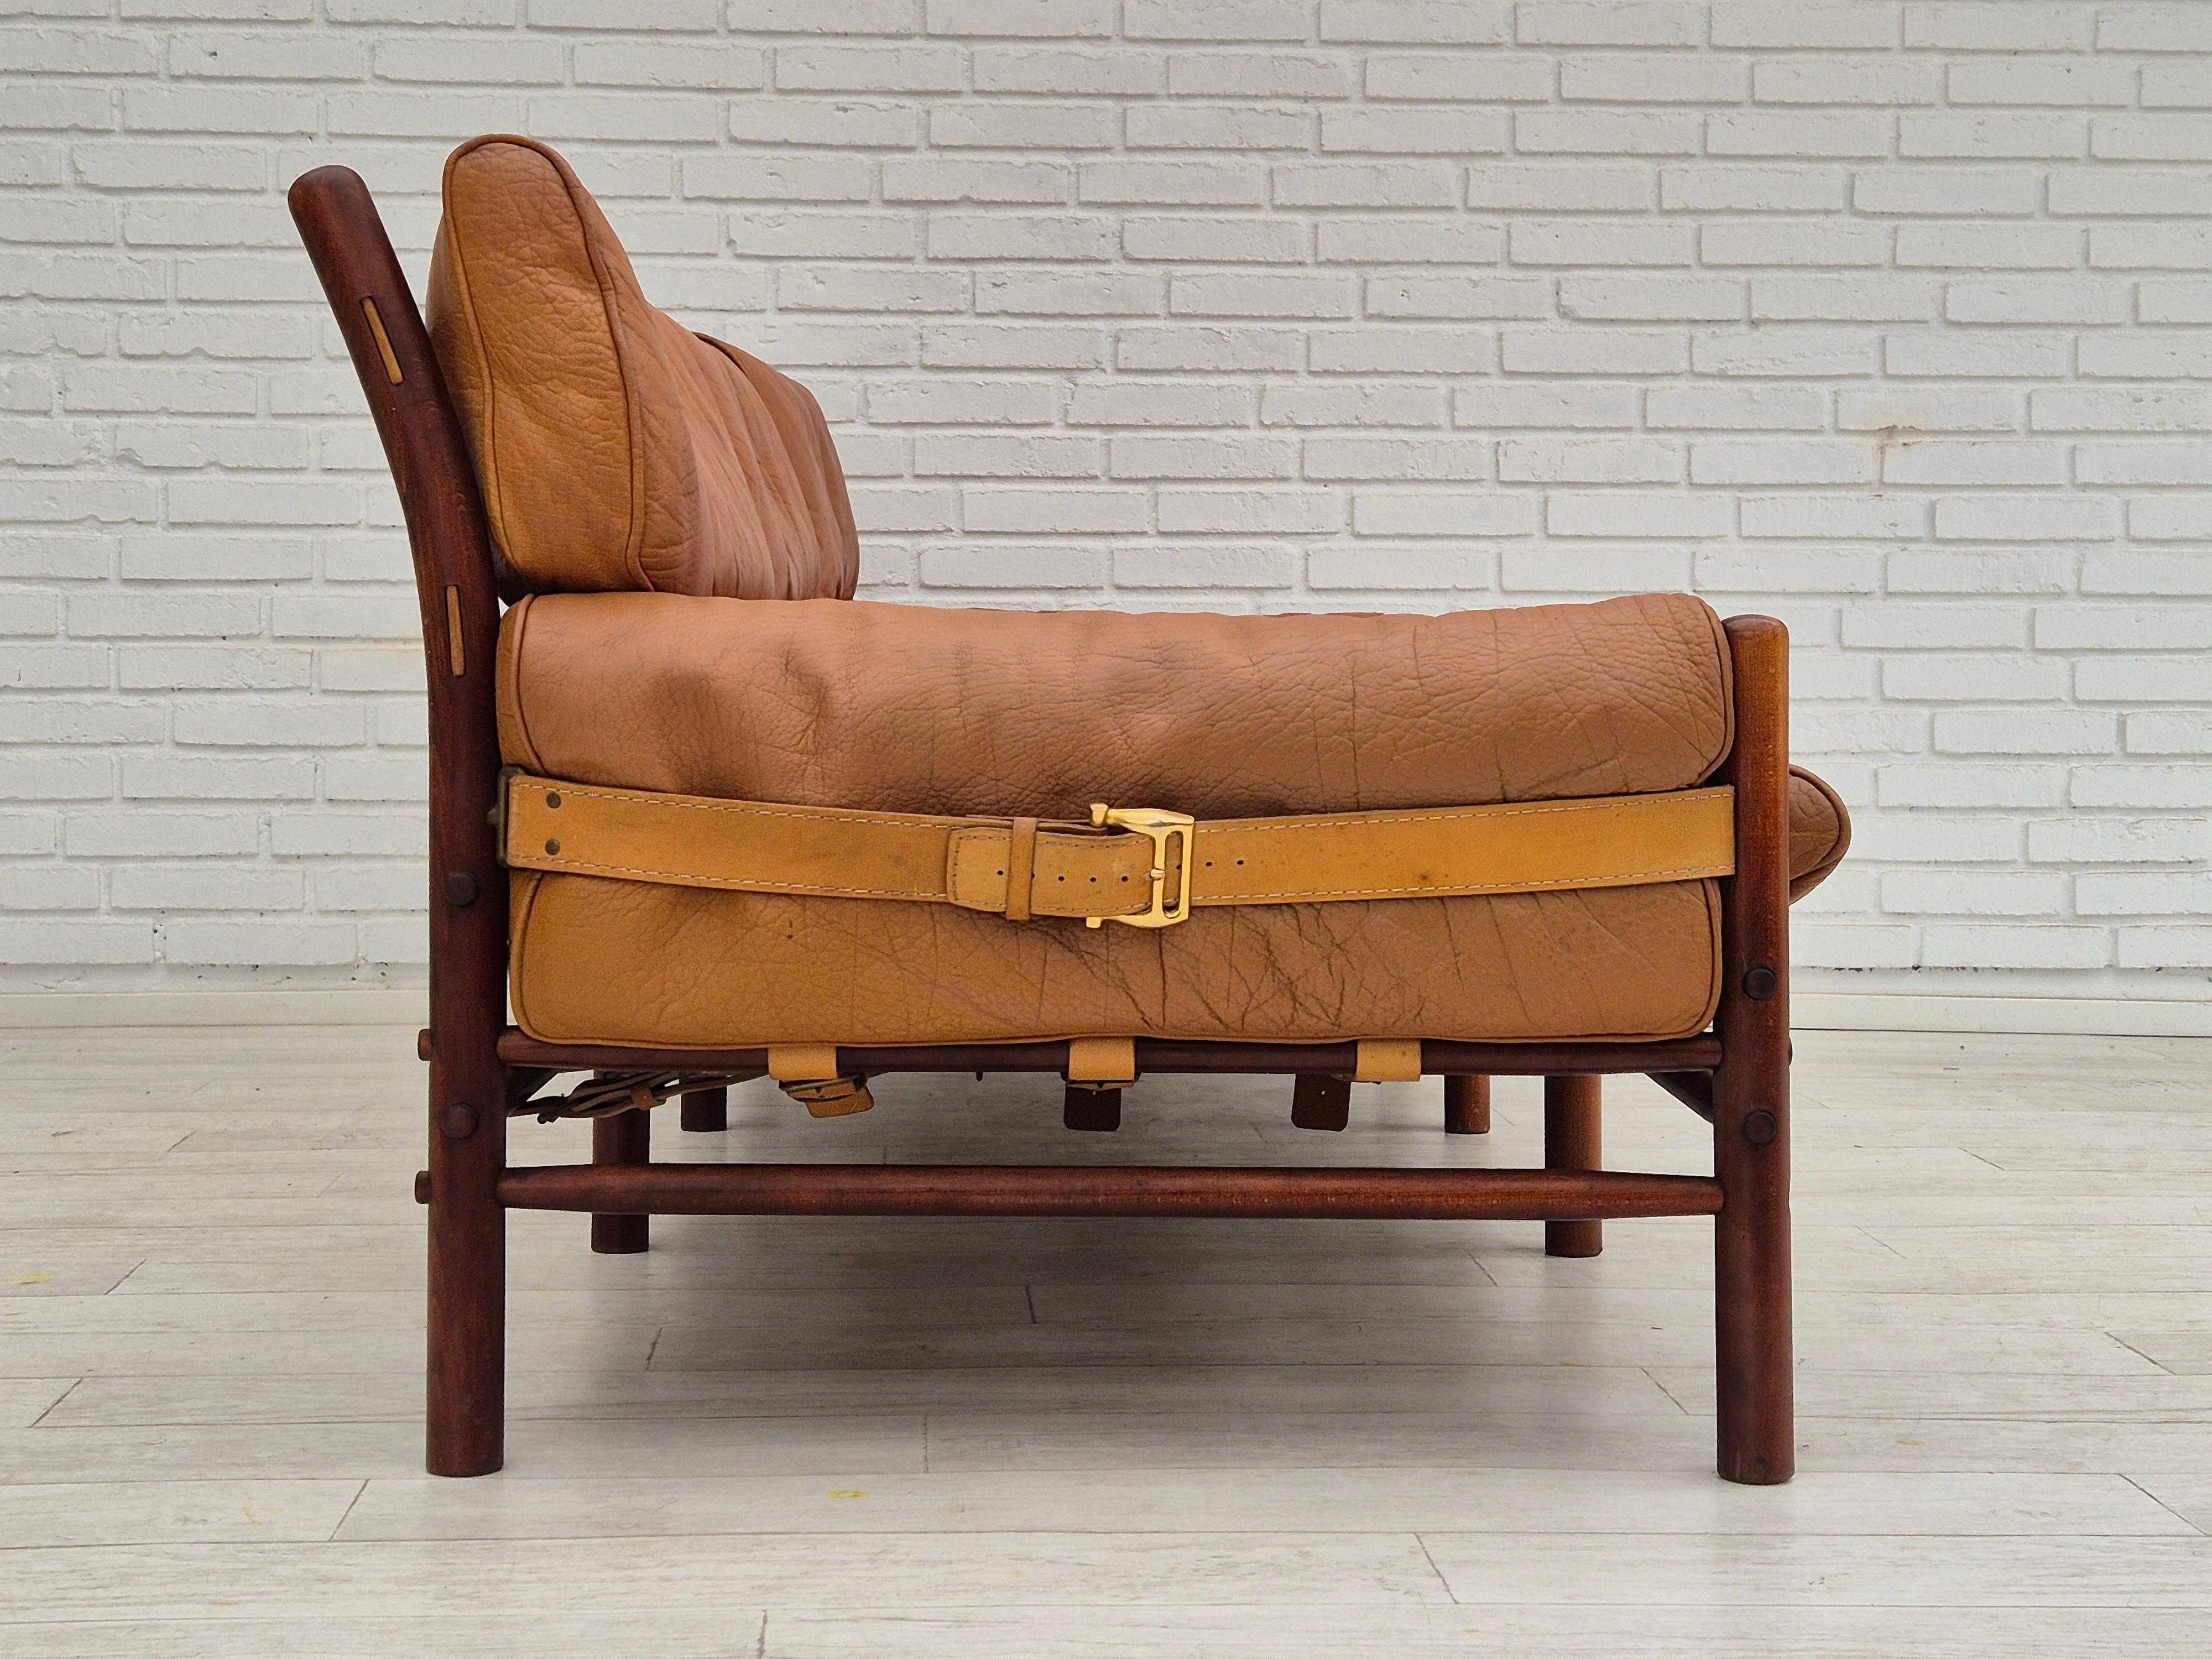 Scandinavian Modern 1960s, Scandinavian design by Arne Norell, sofa, model 